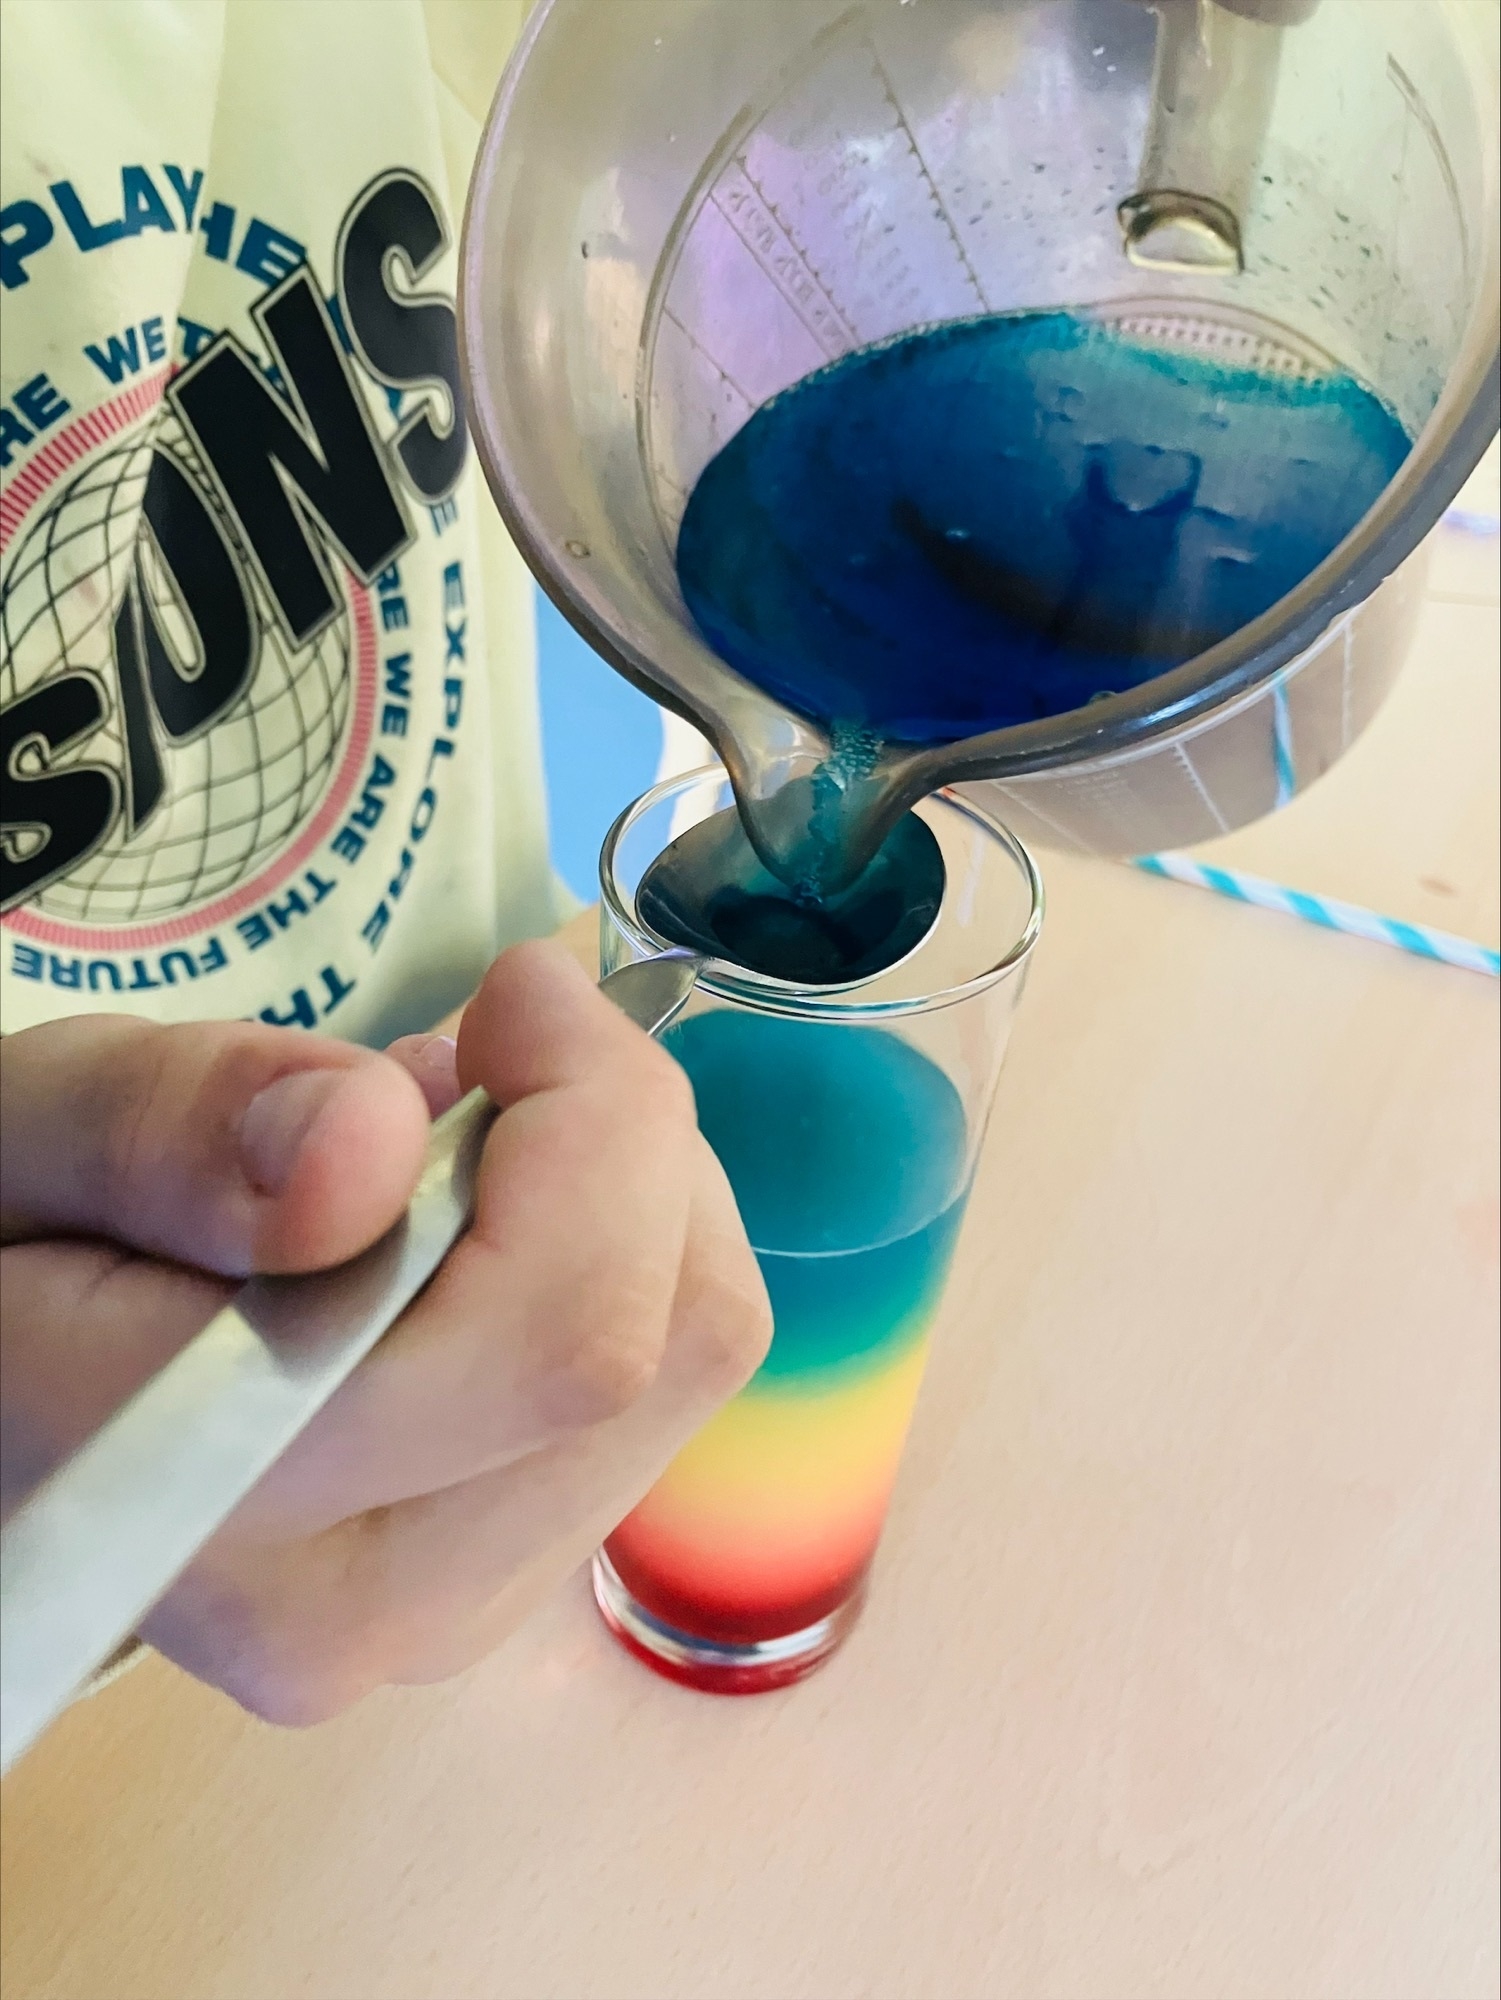 Aus einer Karaffe wird blaue Flüssigkeit in eine Glas geschüttet. In dem Glas befindet sich bereits rote, gelbe und blaugrüne Flüssigkeit.